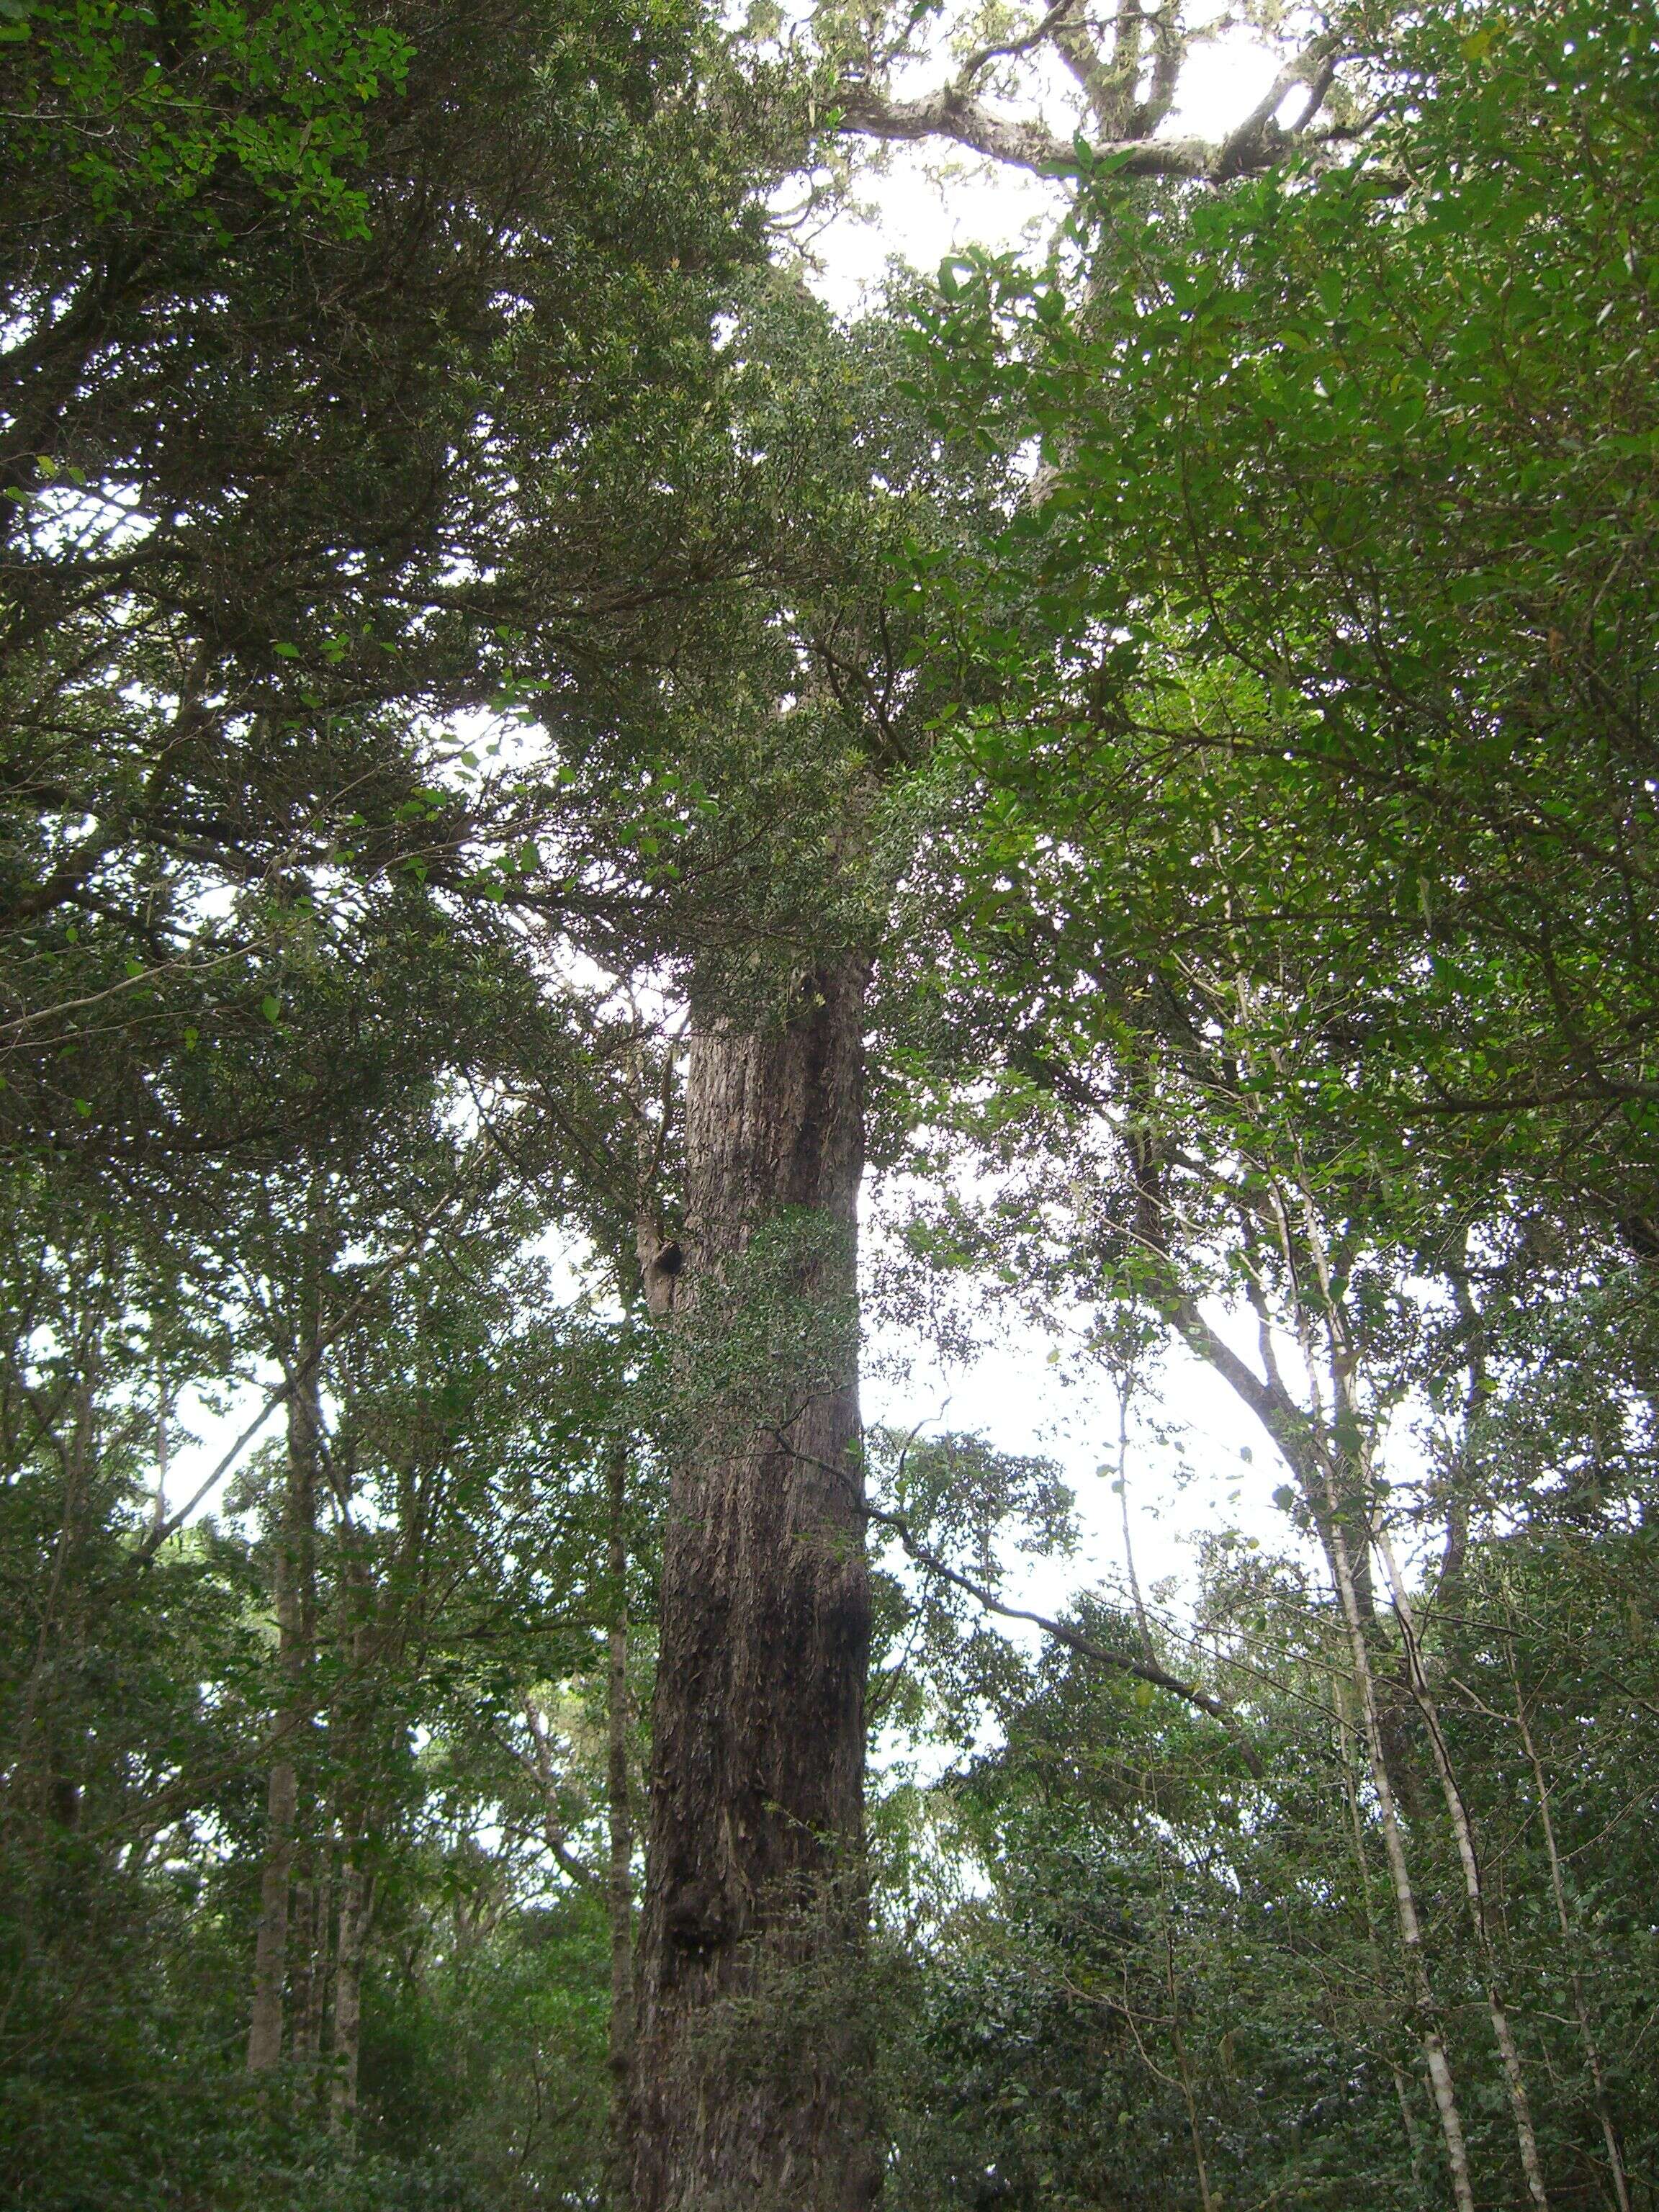 Image of yellowwood